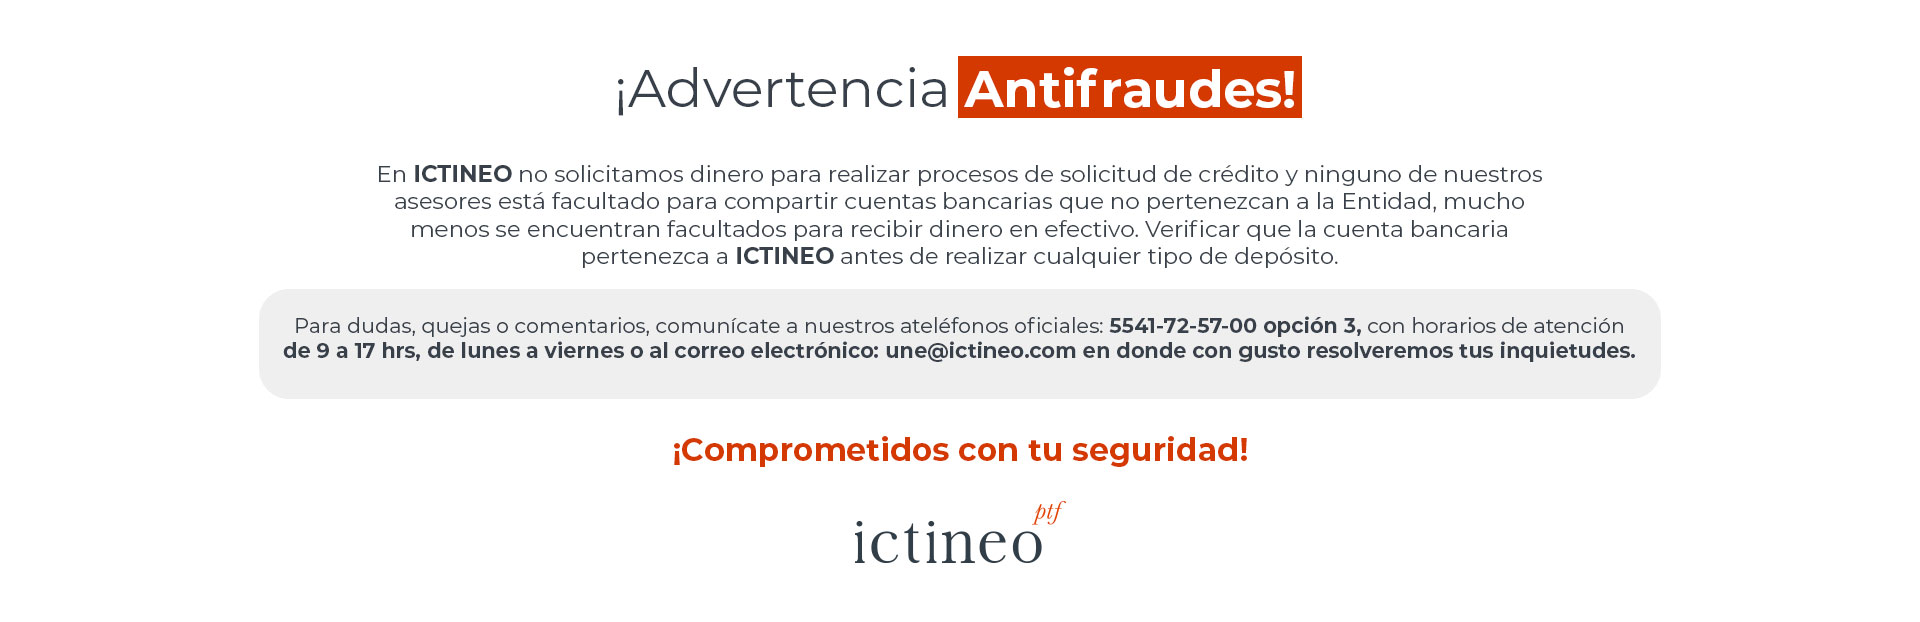 banner_advertencia